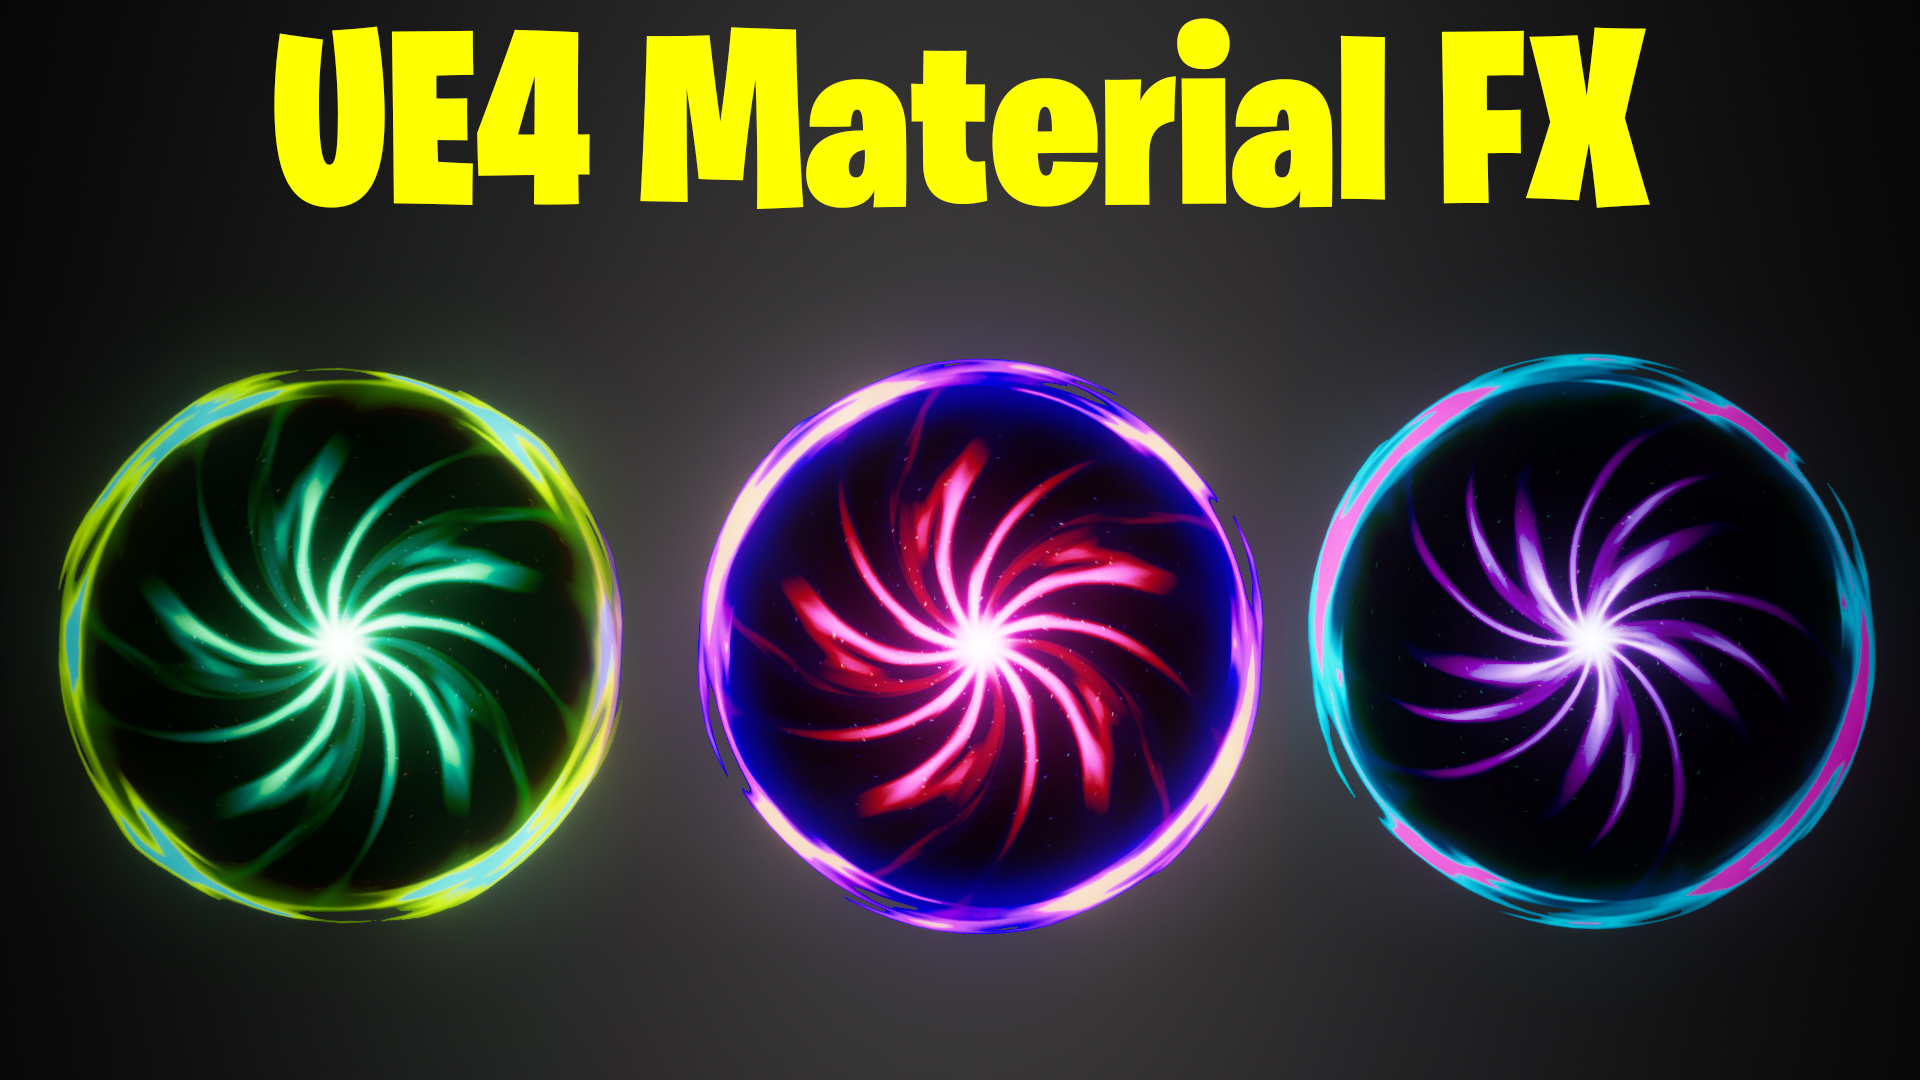 UE4 Material FX Tutorial